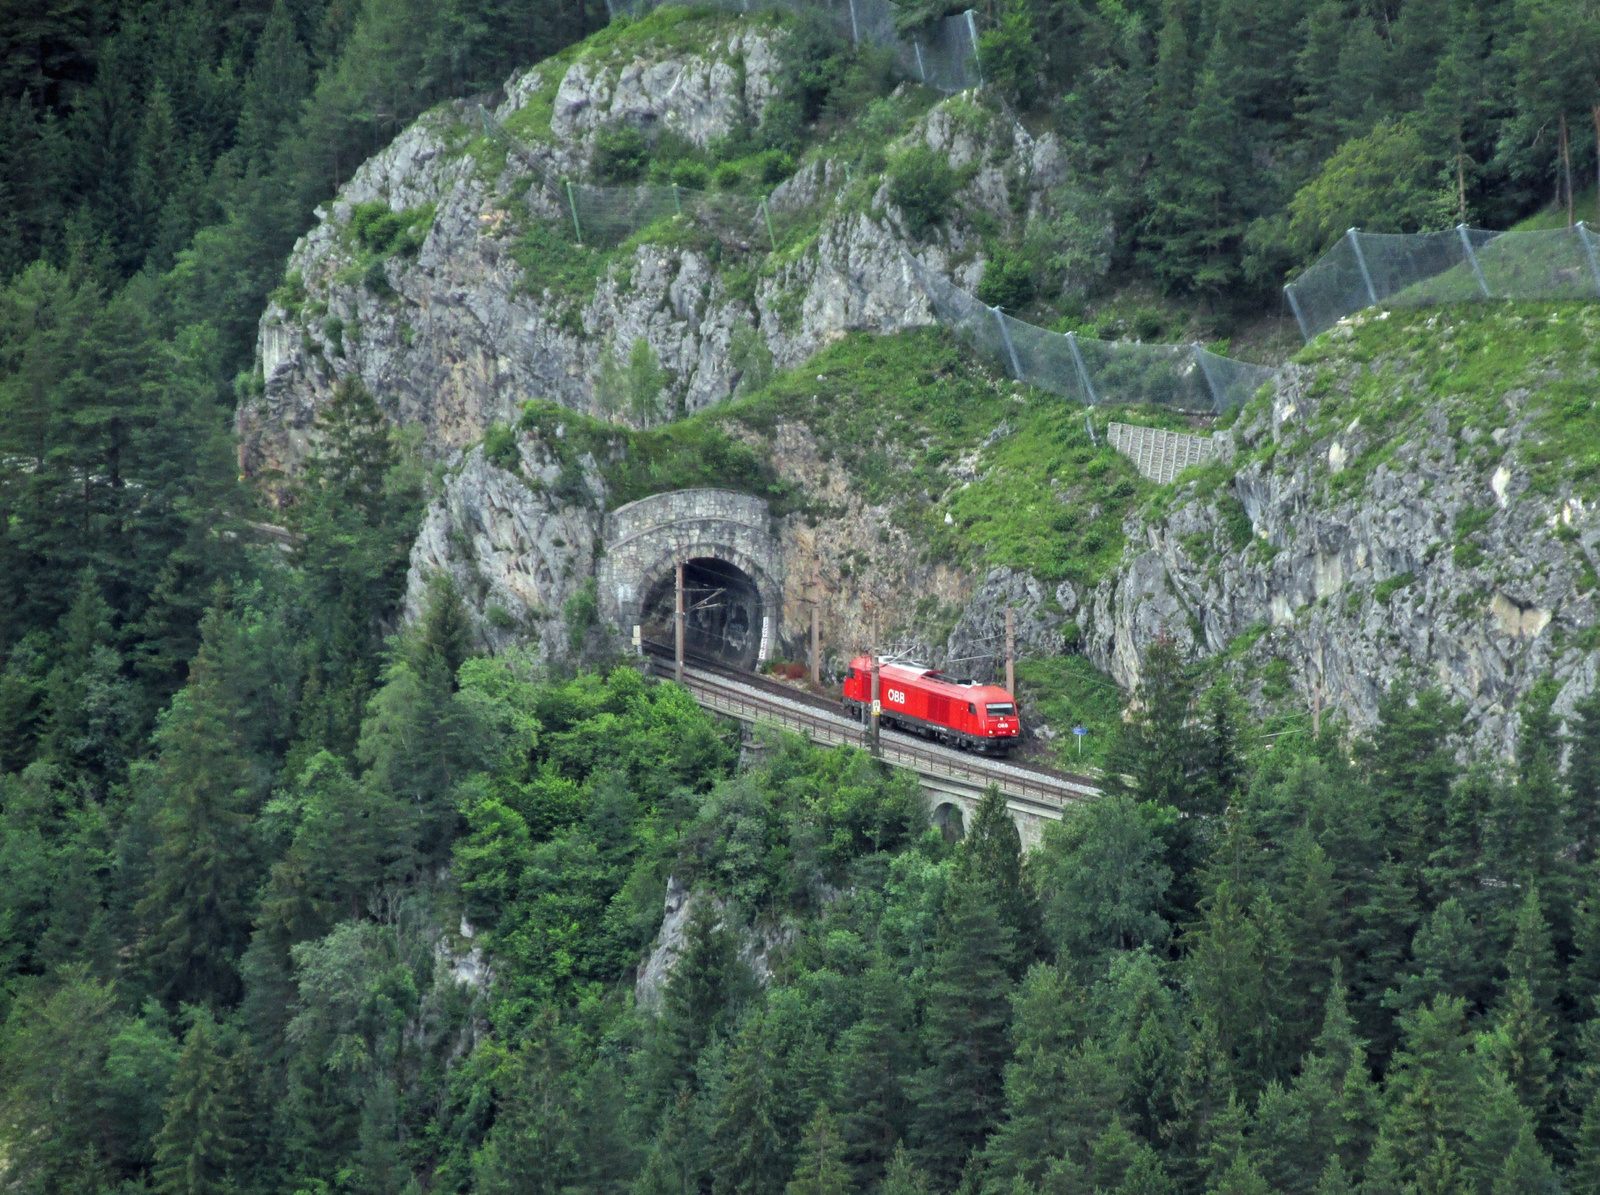 2016 - Kleiner Krausel Tunnel